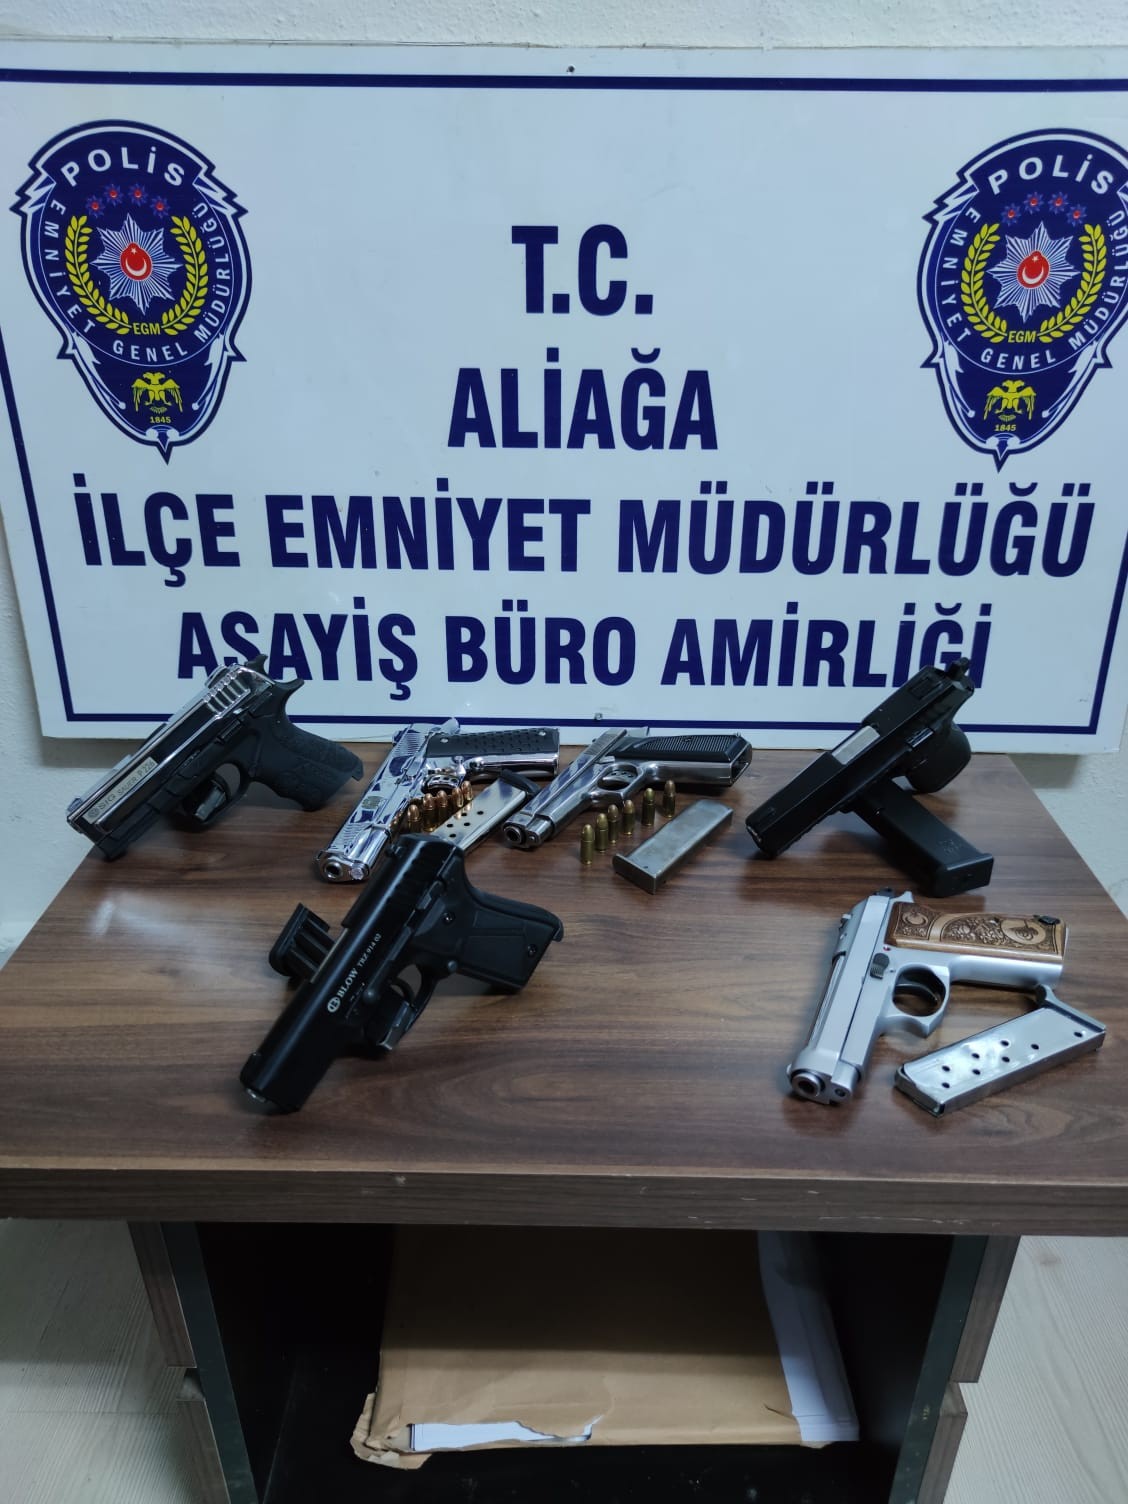 İzmir’de silah kaçakçılarına pazarlık esnasında baskın: 5 tutuklama #izmir